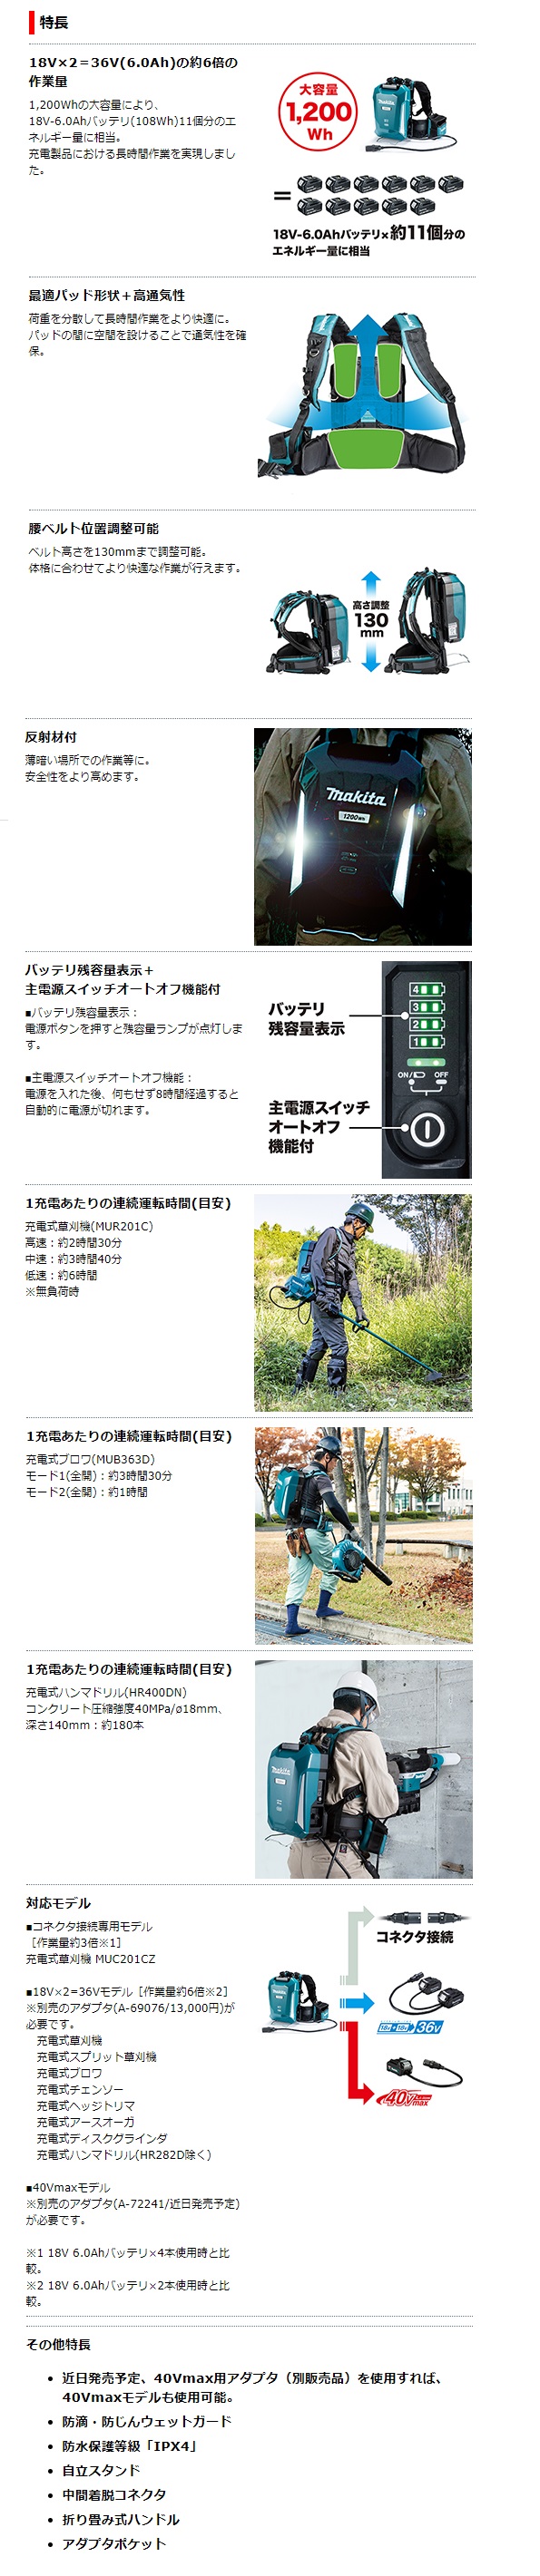 マキタ ポータブル電源 PDC1200 A-71825 / 秋本勇吉商店 WEBショップ